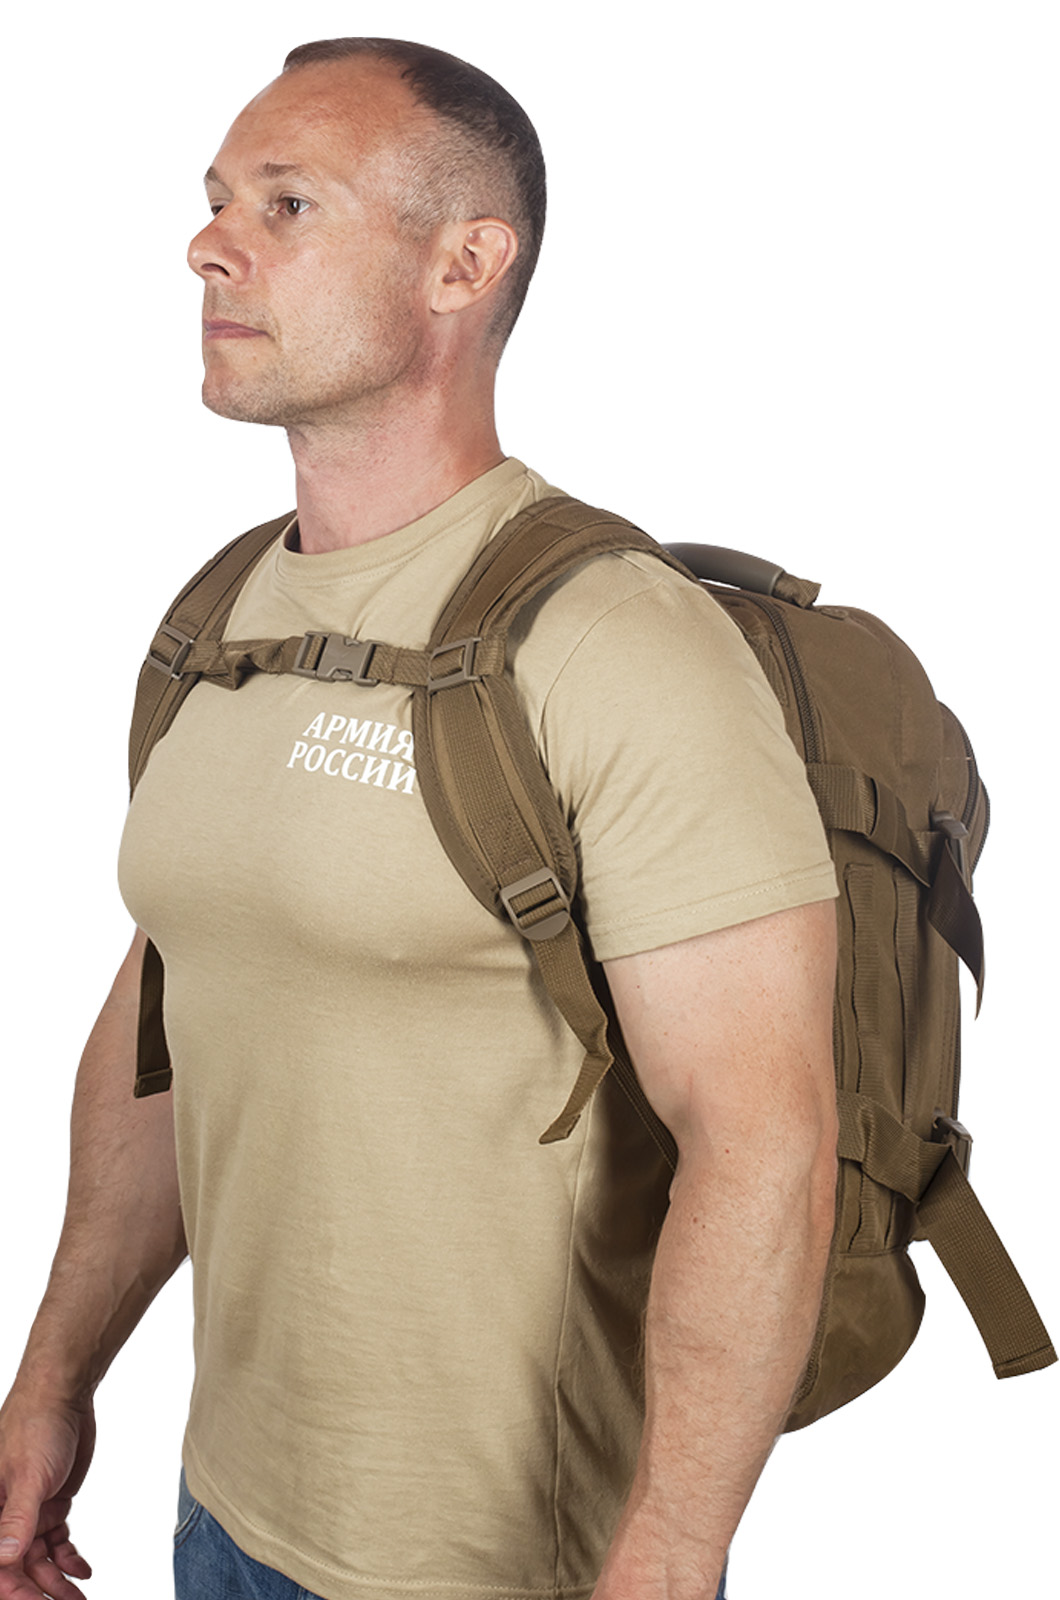 Патрульный трехдневный рюкзак 3-Day Expandable Backpack 08002B Coyote с эмблемой "Россия" 